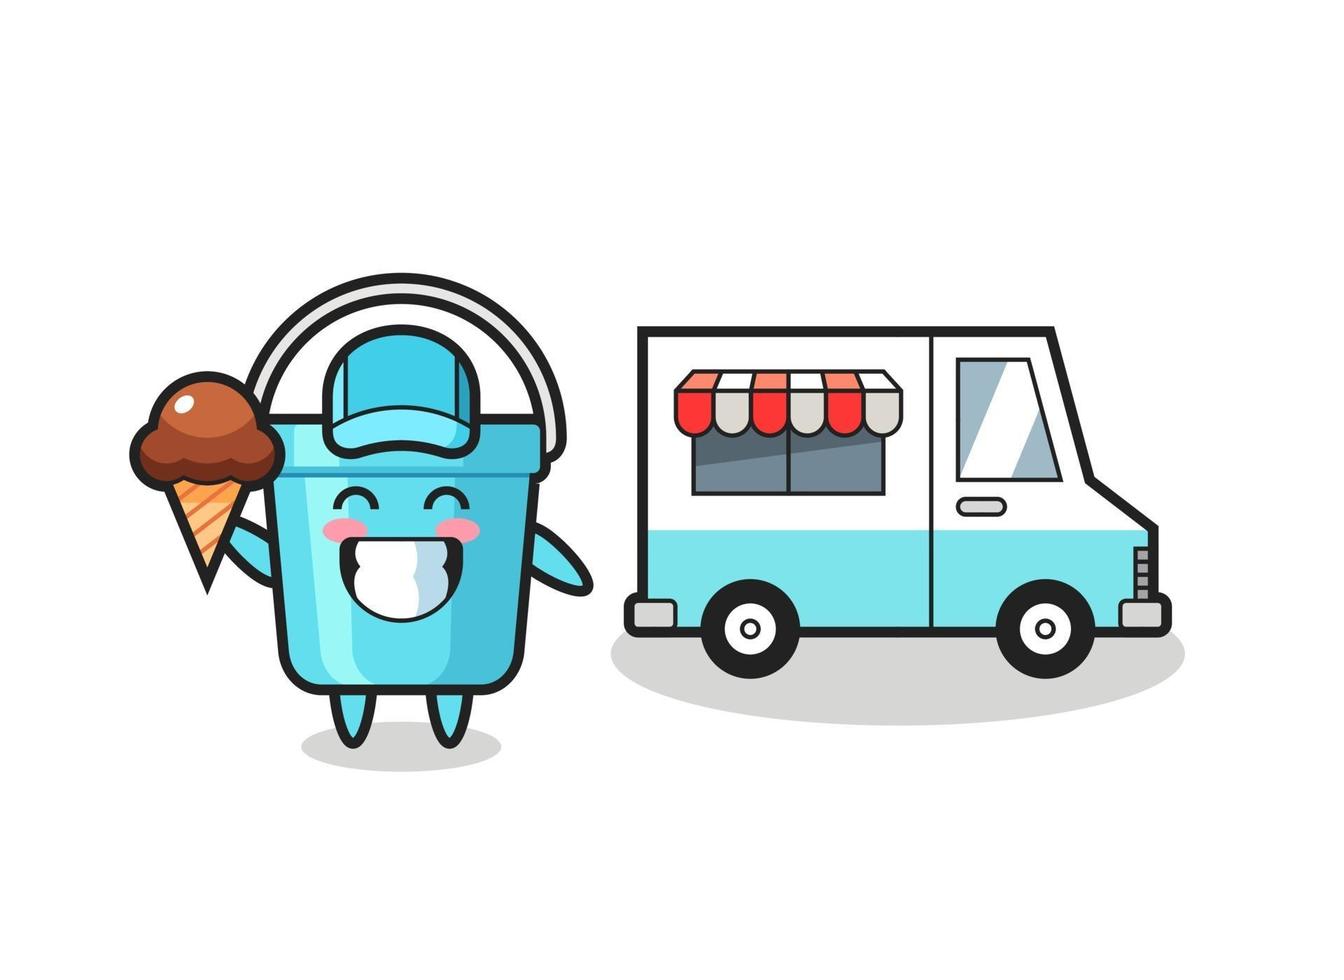 caricature de mascotte de seau en plastique avec camion de crème glacée vecteur